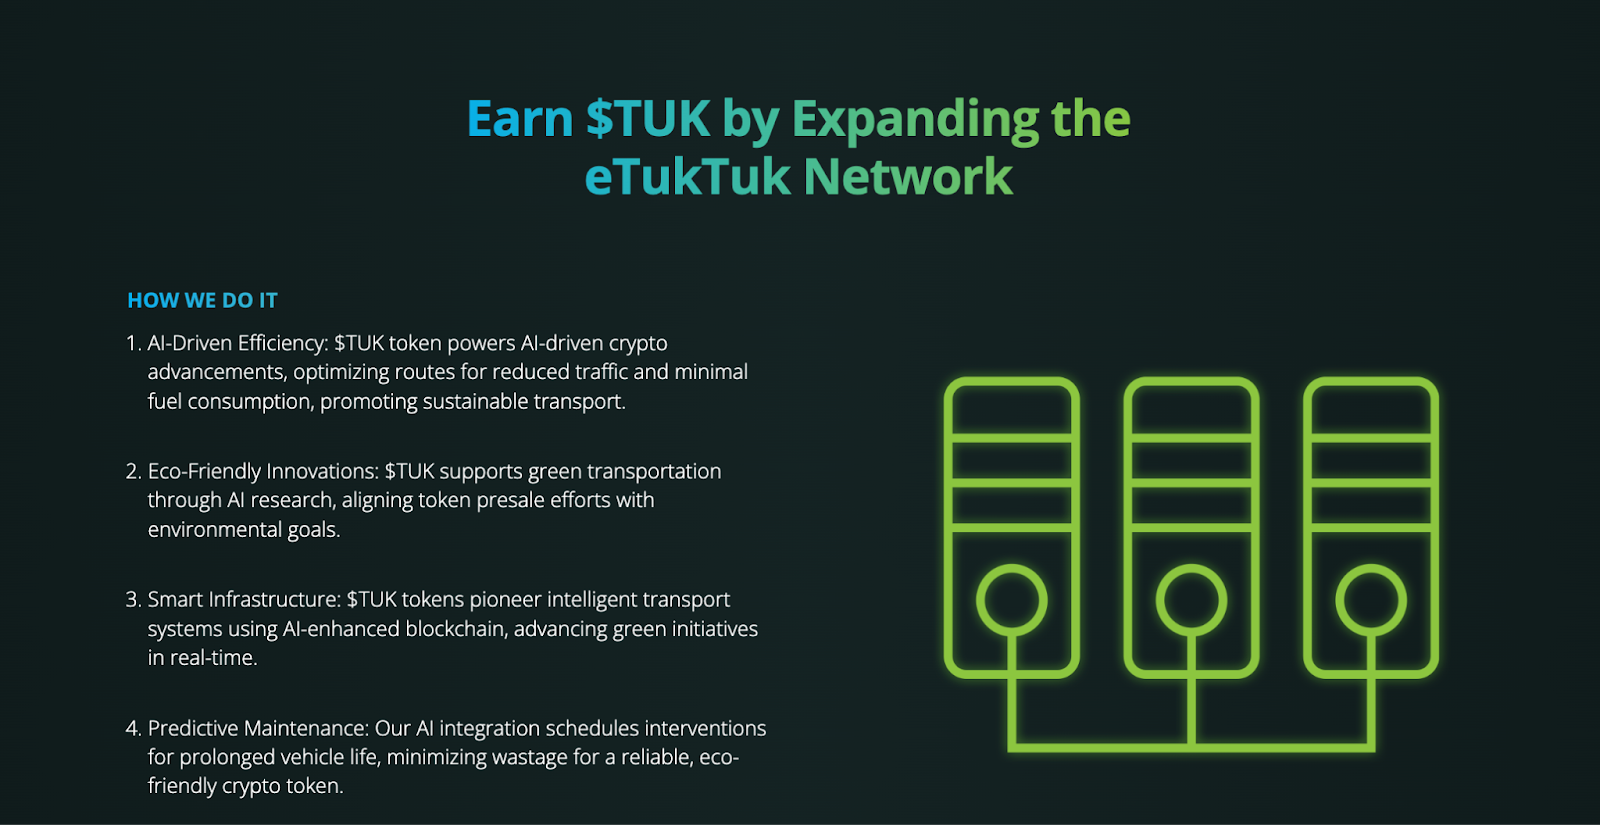 eTukTuk lève 1,2 million de dollars en prévente, les analystes s'attendent à davantage de gains - La Crypto Monnaie